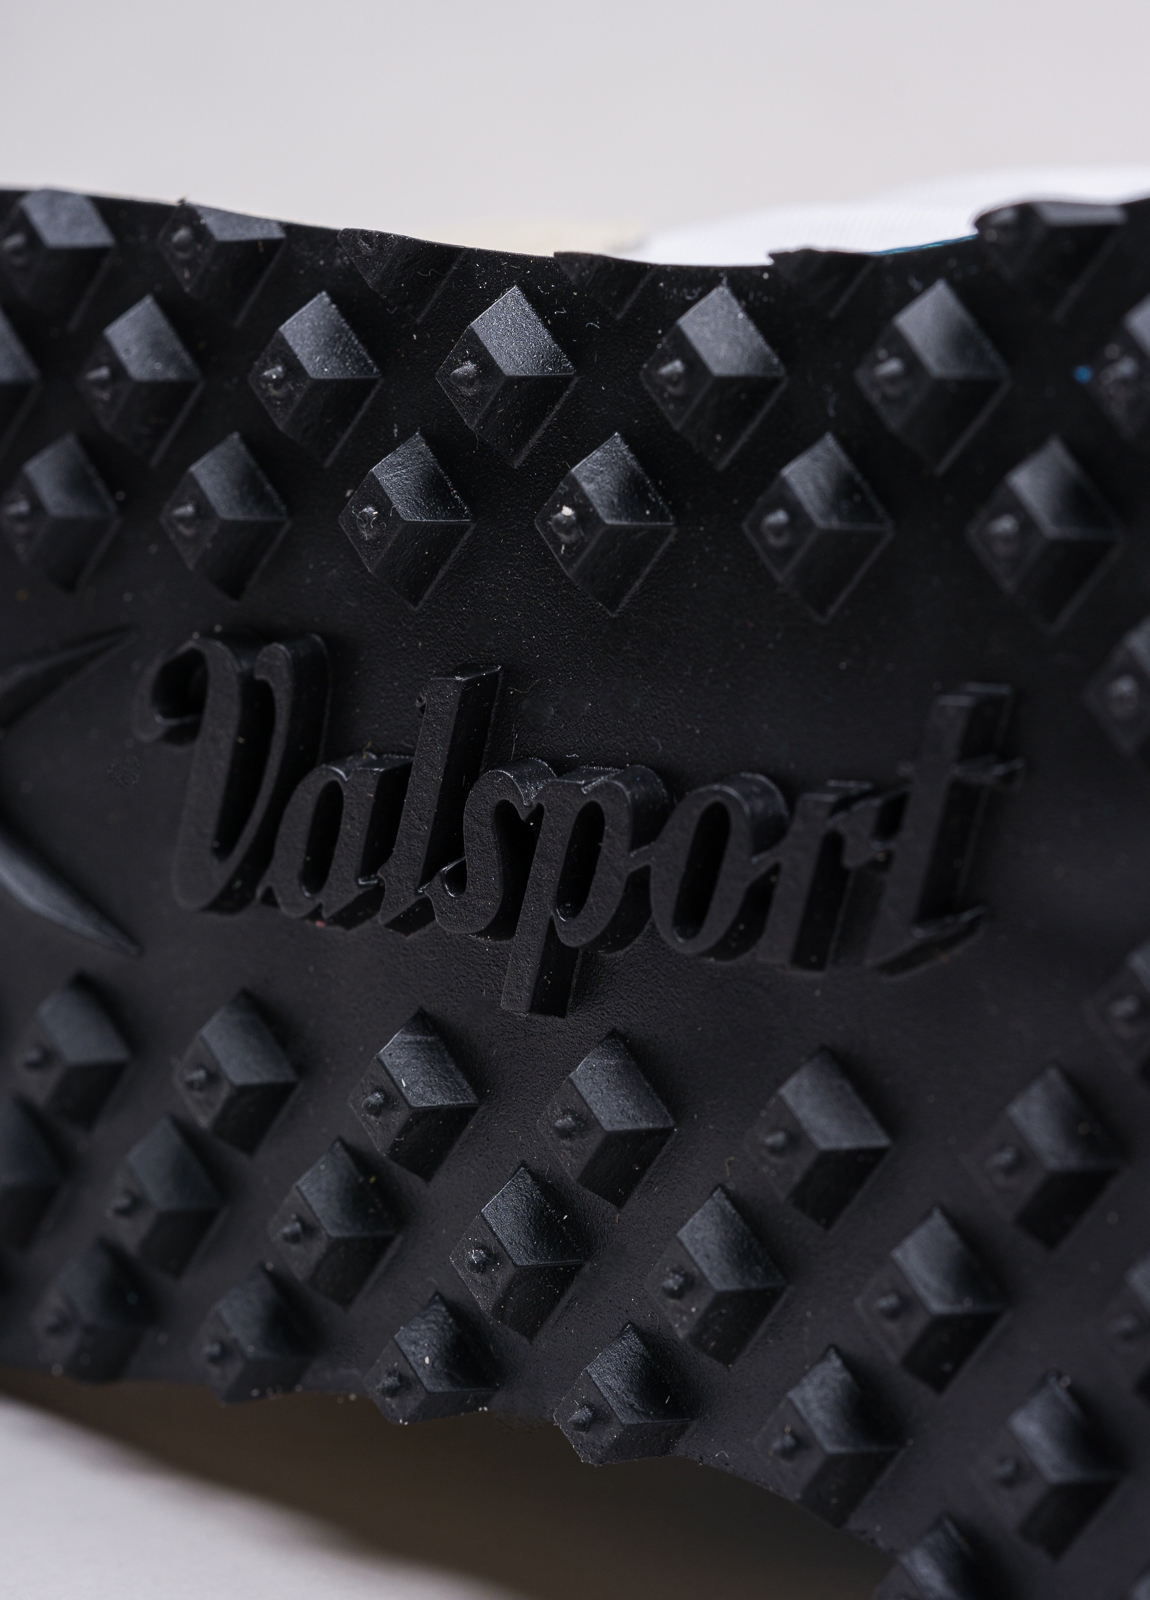 Sneakers VALSPORT blanca y beige con detalles azul y negro - Ítem7